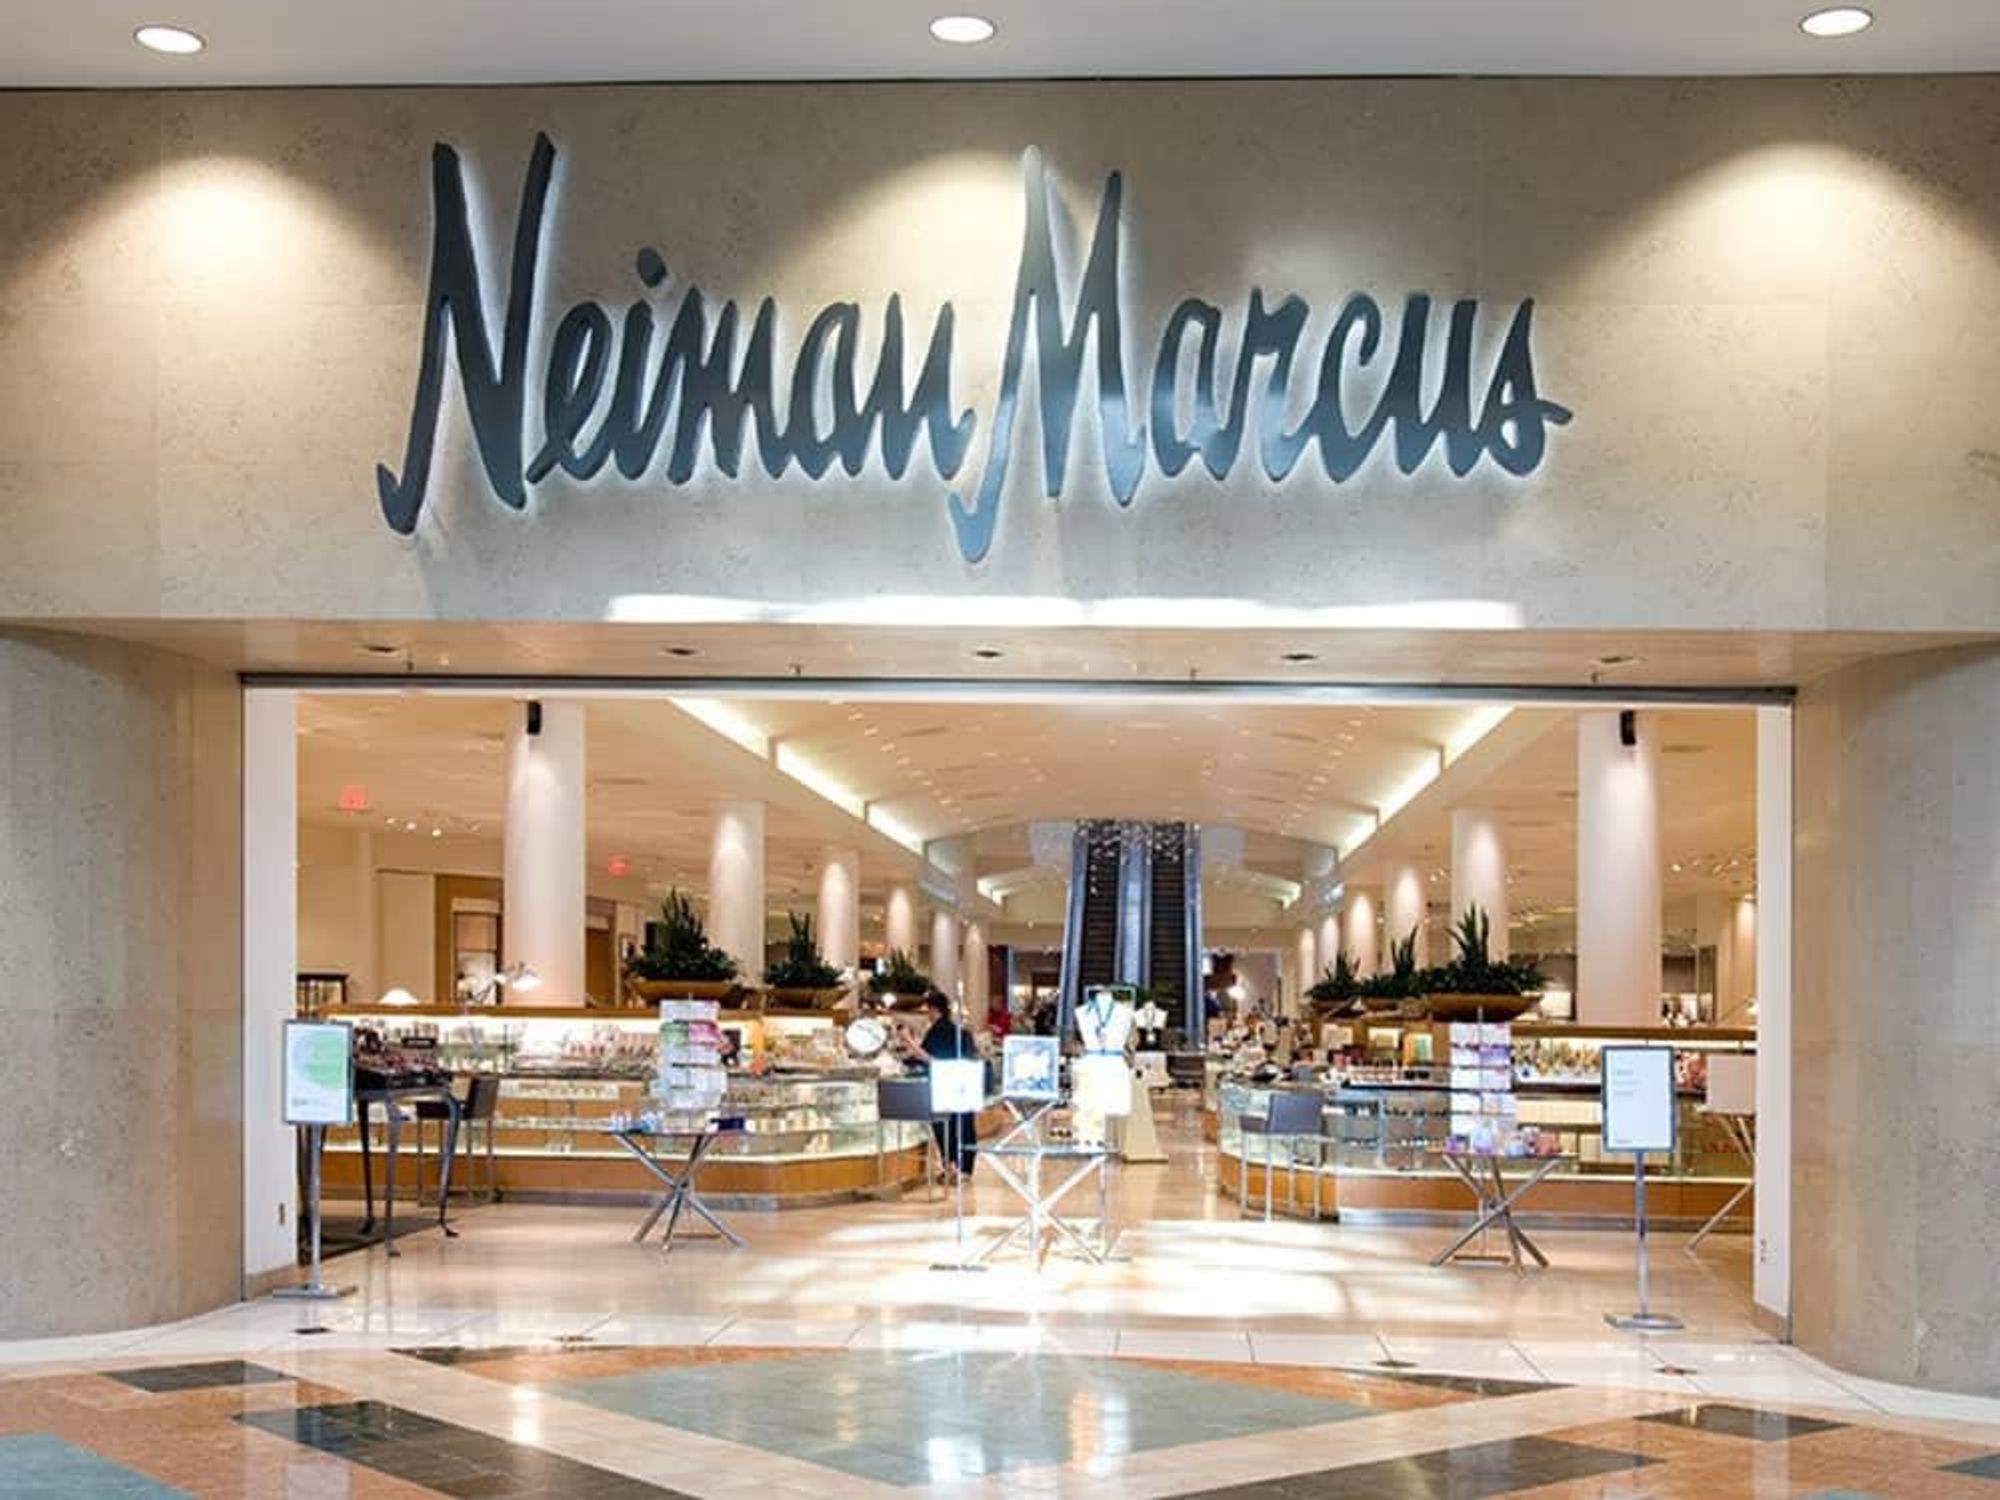 Neiman Marcus - NorthPark Dallas